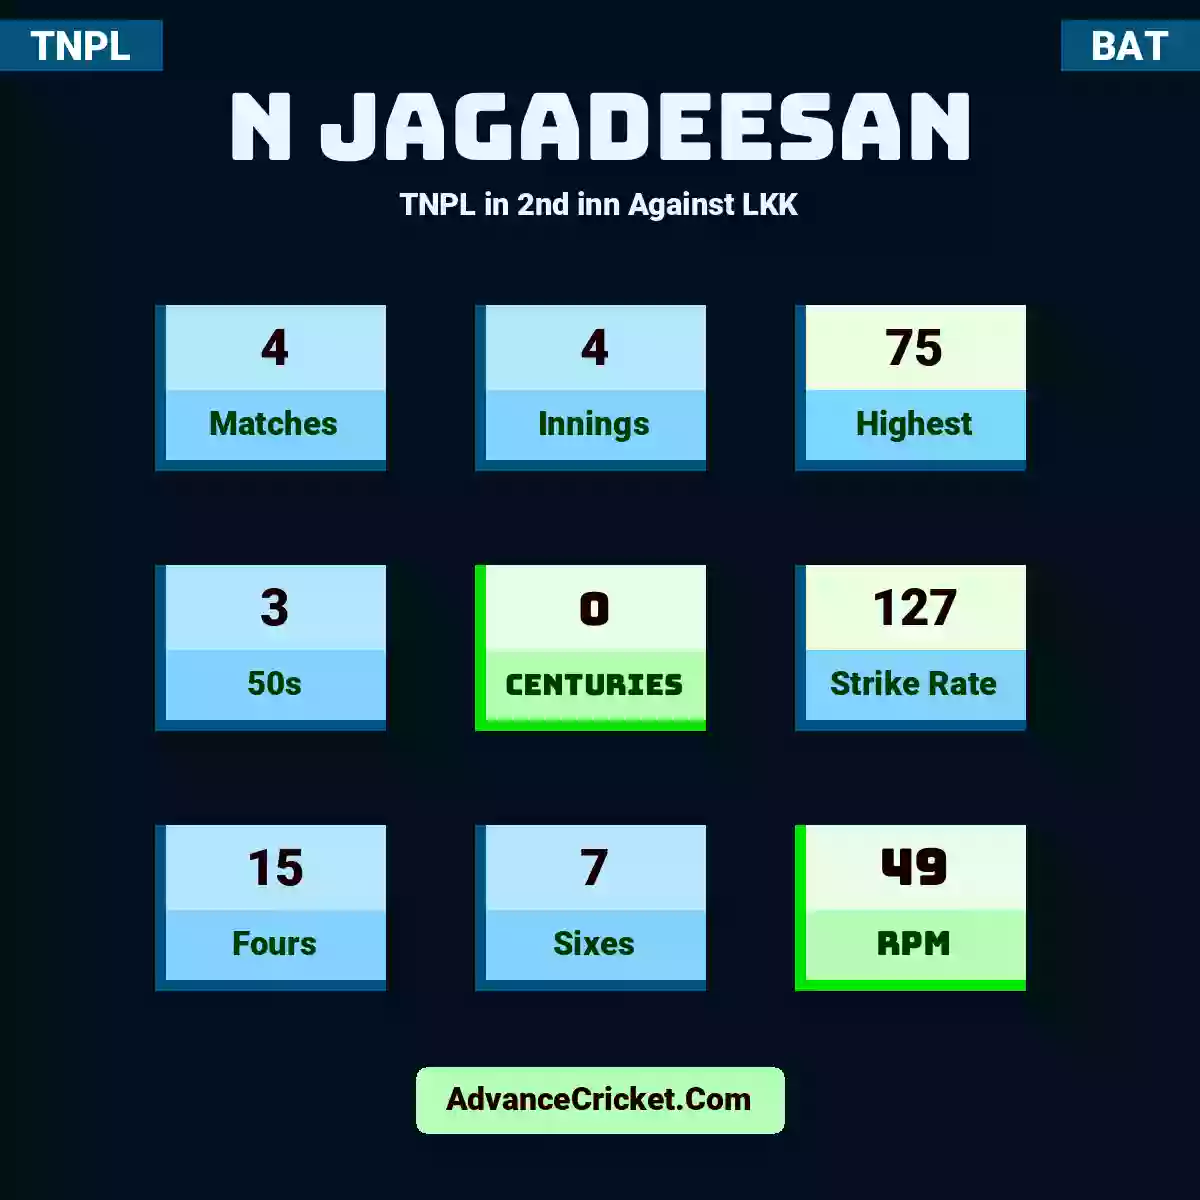 N Jagadeesan TNPL  in 2nd inn Against LKK, N Jagadeesan played 4 matches, scored 75 runs as highest, 3 half-centuries, and 0 centuries, with a strike rate of 127. N.Jagadeesan hit 15 fours and 7 sixes, with an RPM of 49.